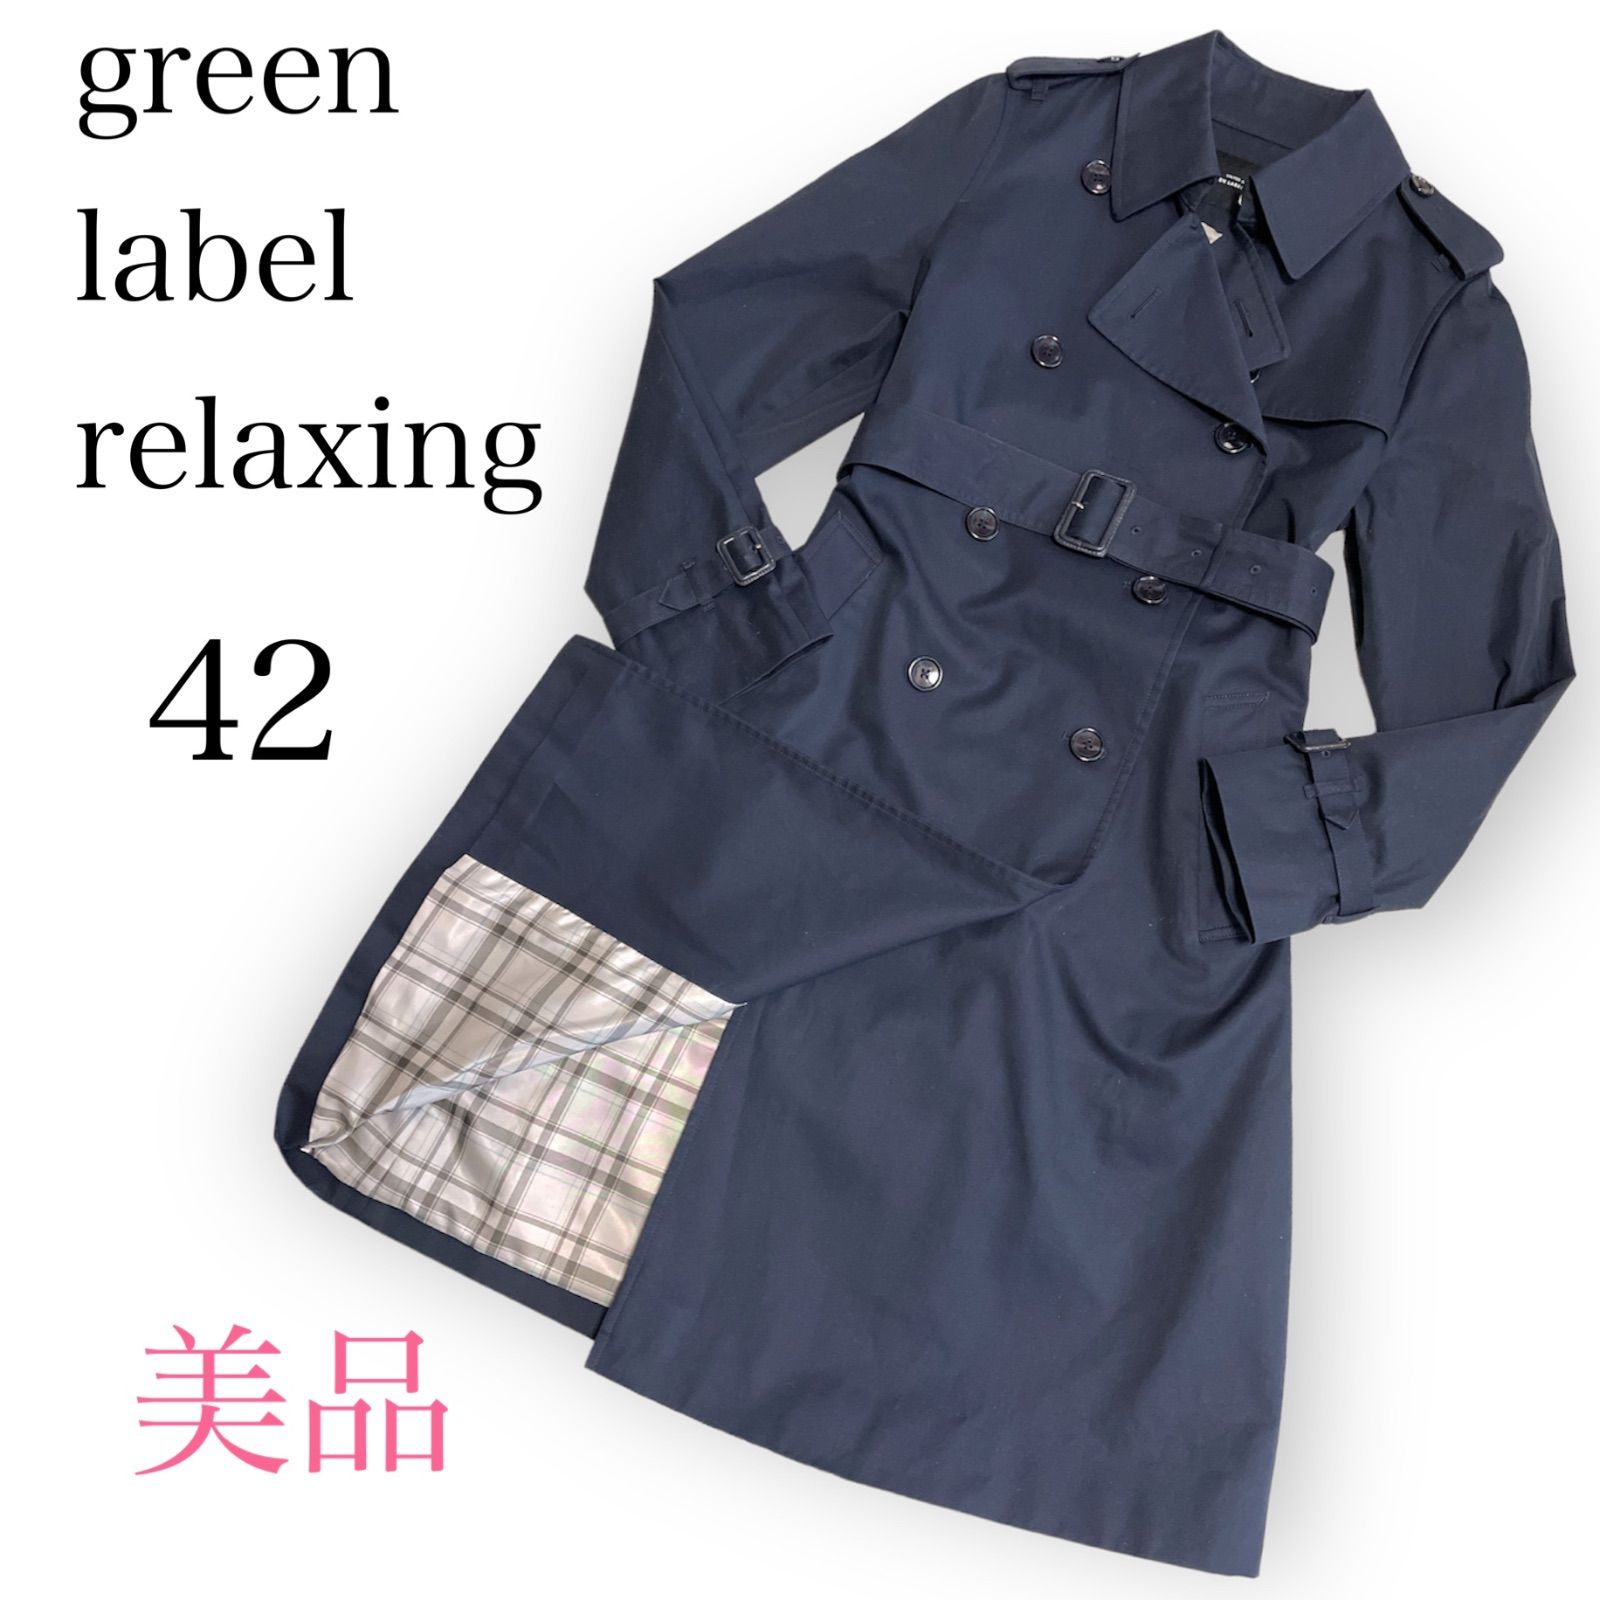 トレンチコート green label relaxing - 通販 - pinehotel.info